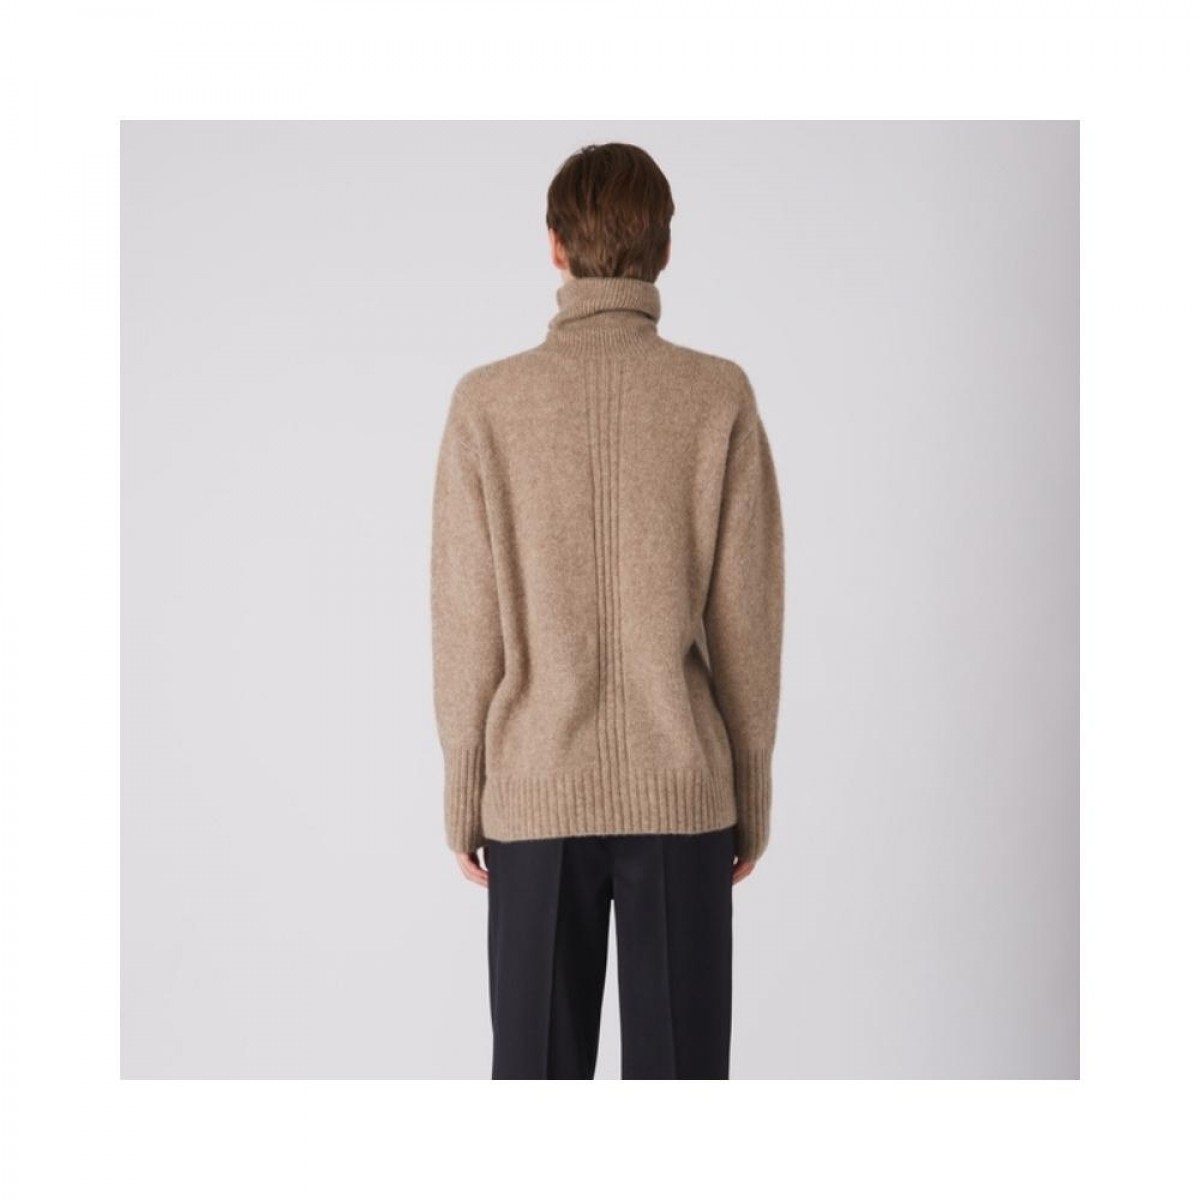 kata knit - nougat - model ryg